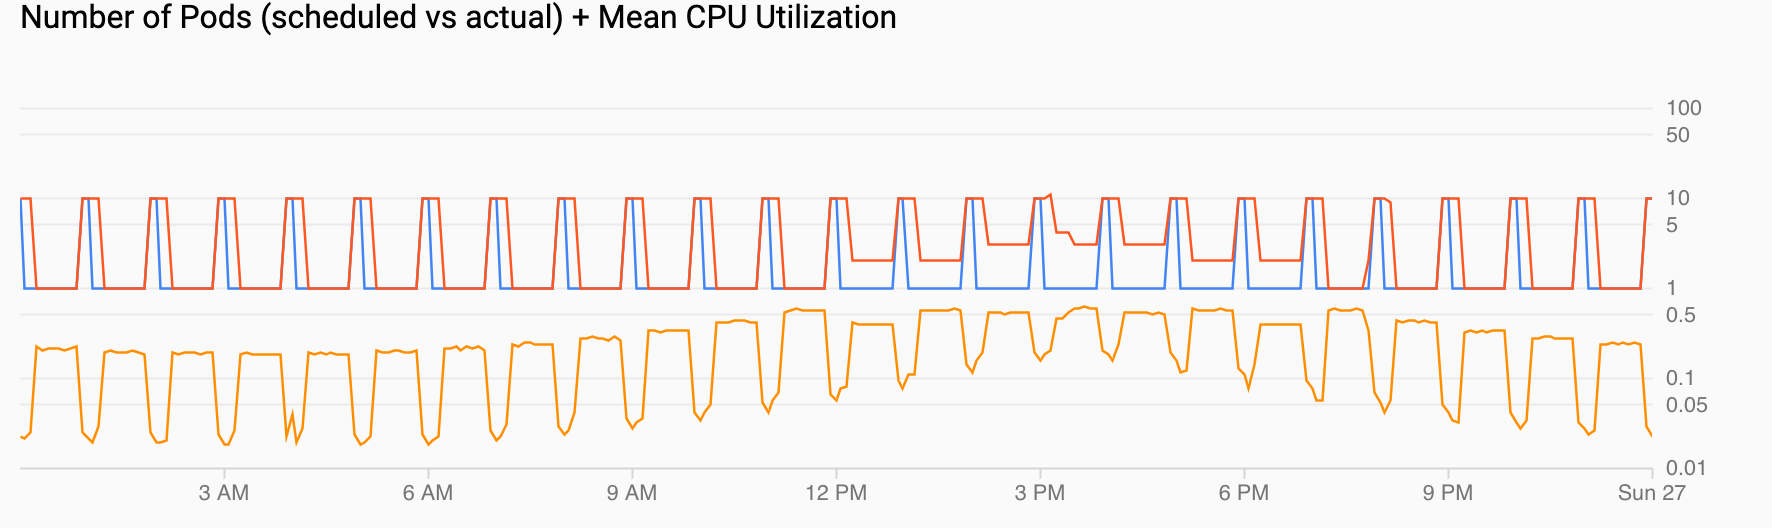 2 个图表。一个图表显示每小时的 Pod 需求及需求激增。另一个图表显示 CPU 利用率上下浮动，但不超过配置的最高值。